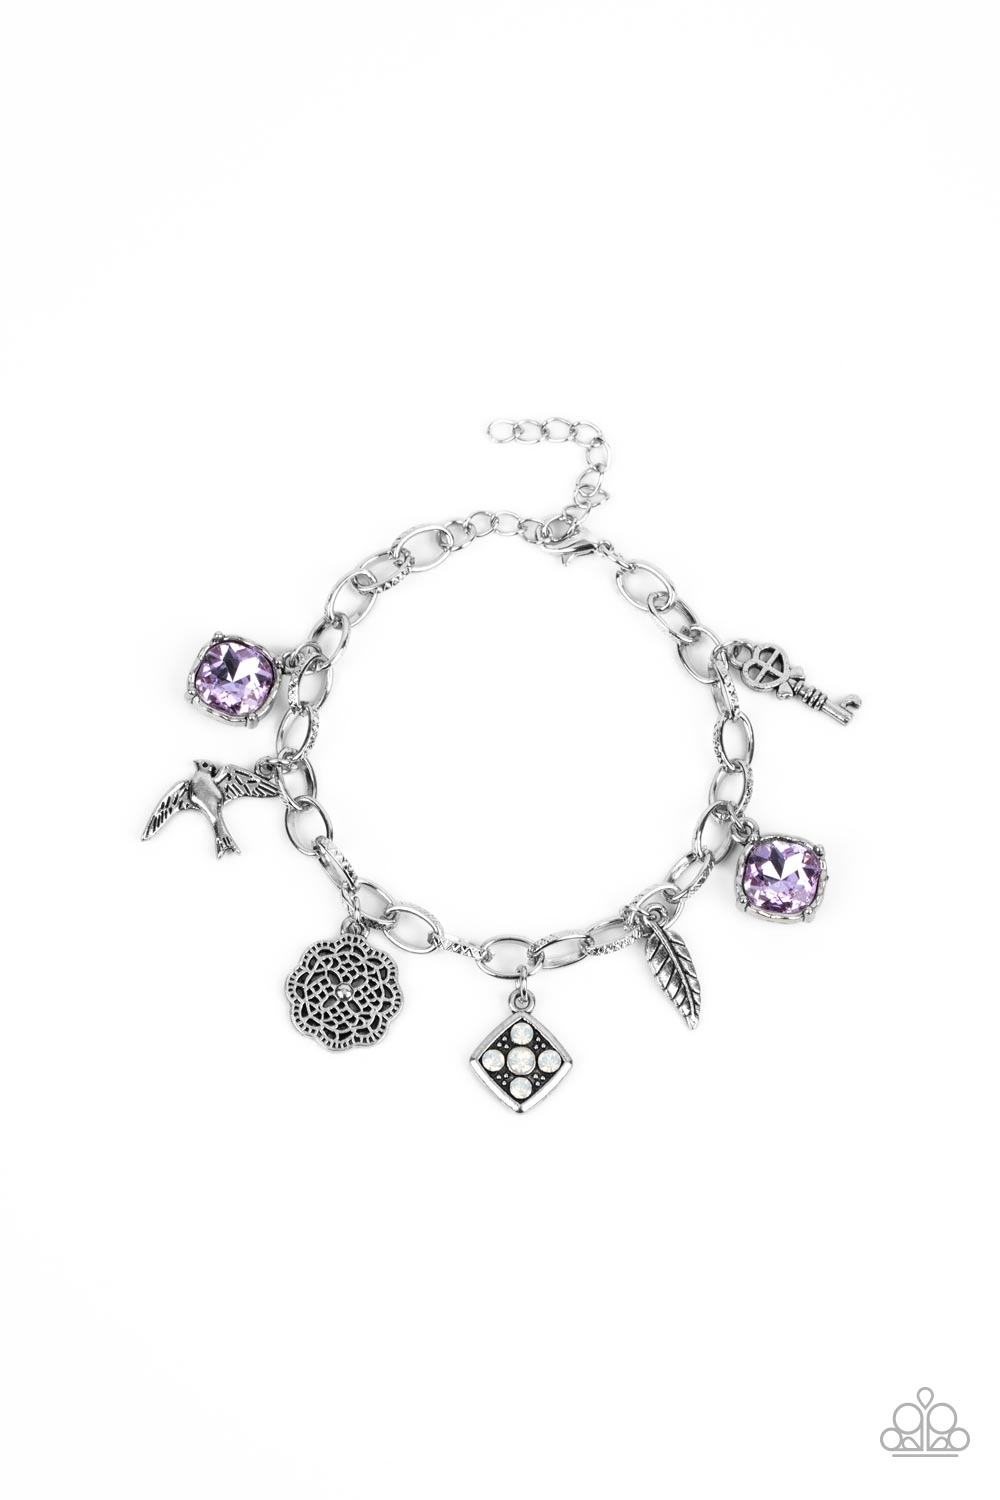 Fancifully Flighty - Purple bracelet